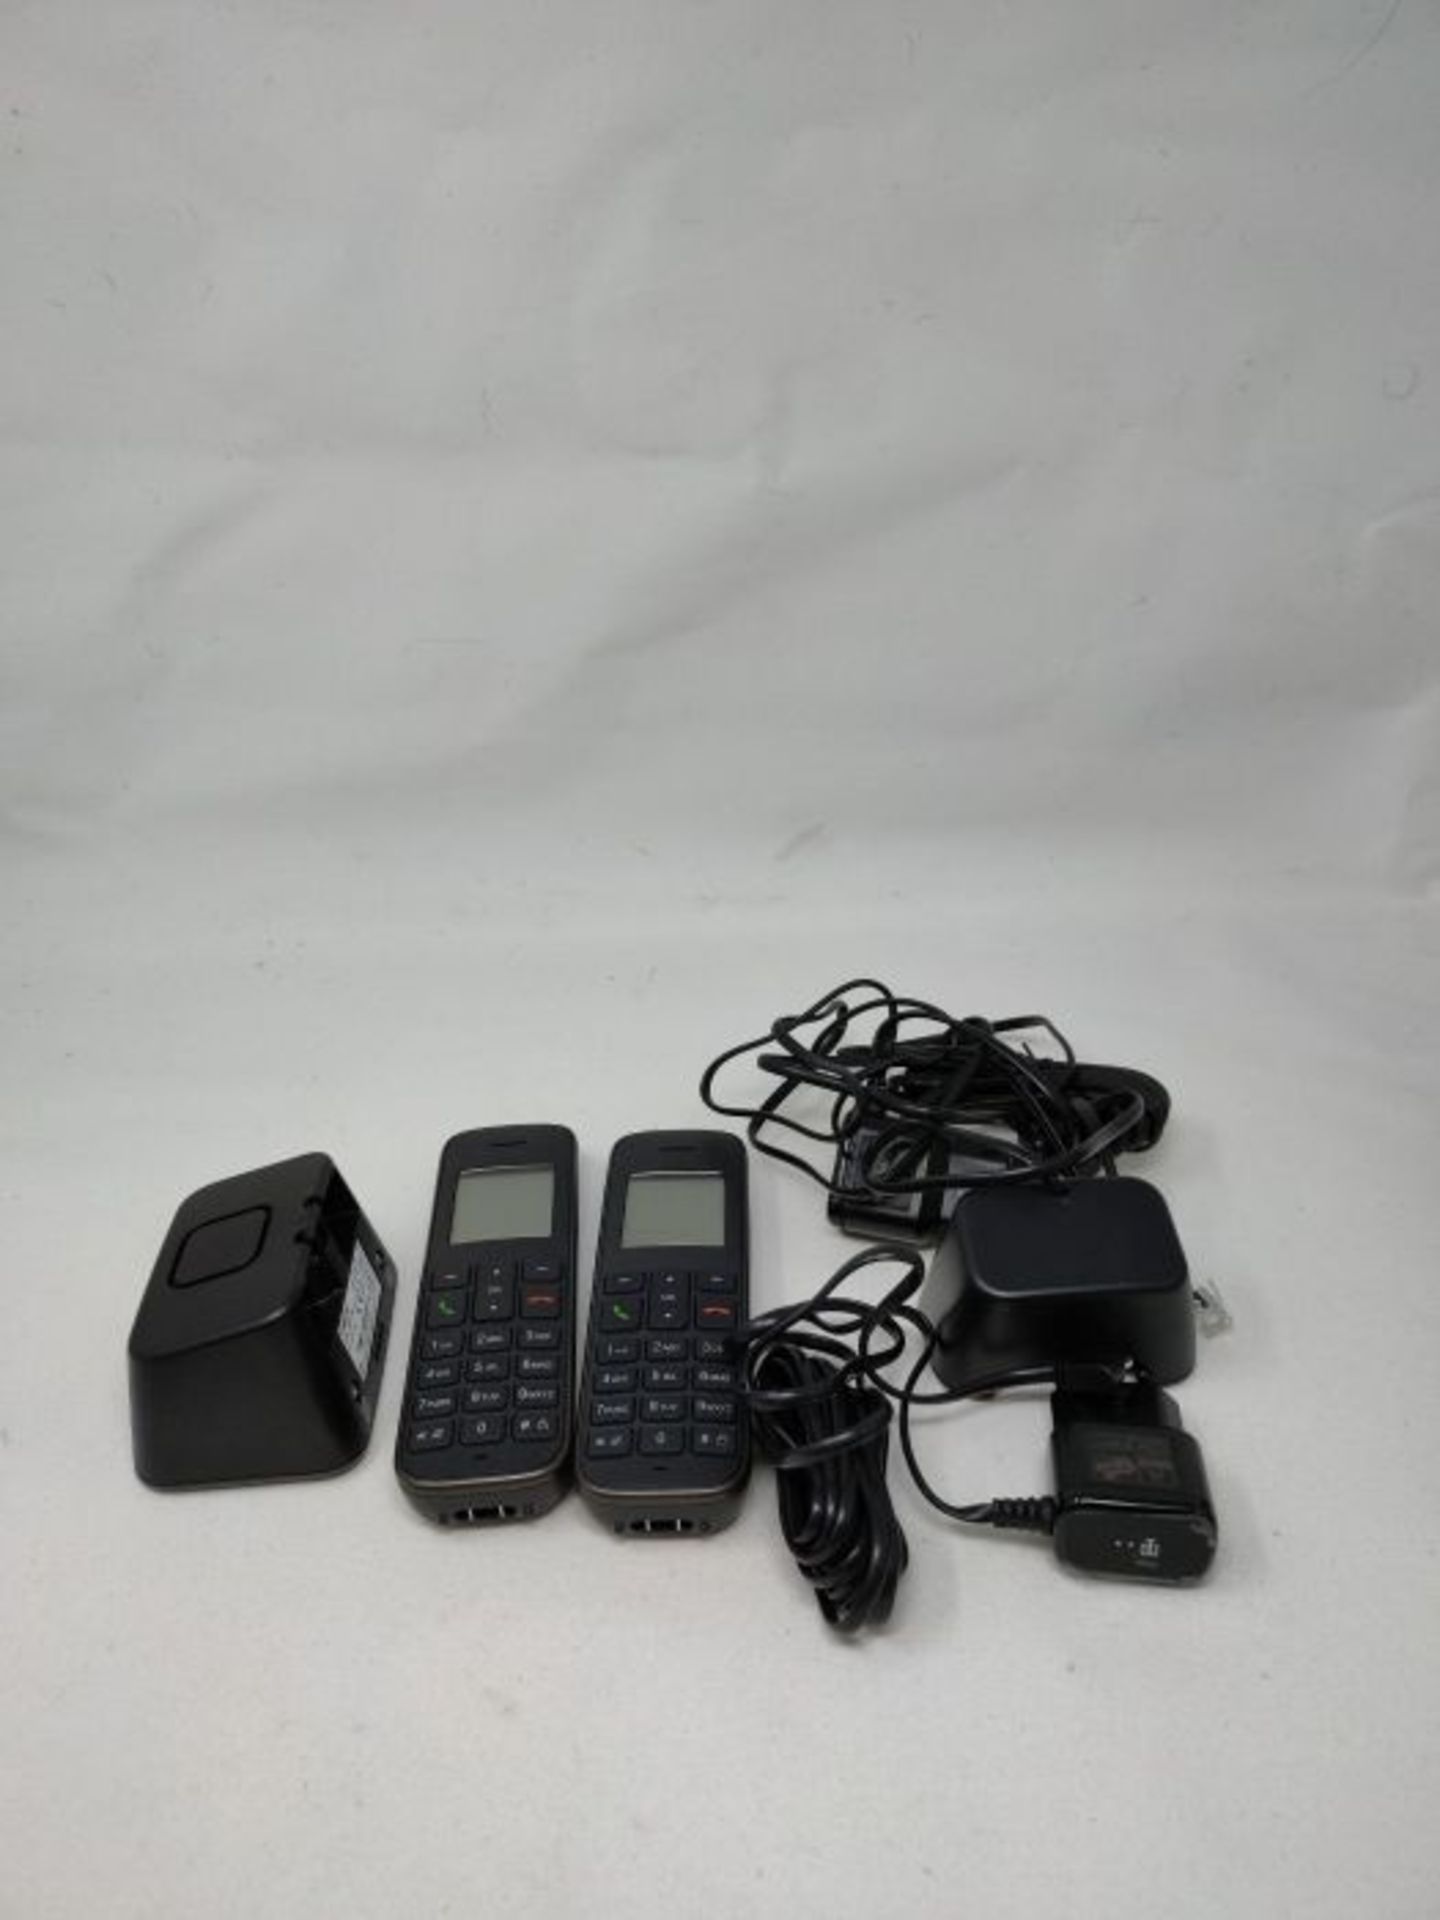 RRP £54.00 Telekom Sinus A207 DUO Schnurlostelefon mit AB schwarz - analoges DECT Telefon mit Anr - Image 3 of 3